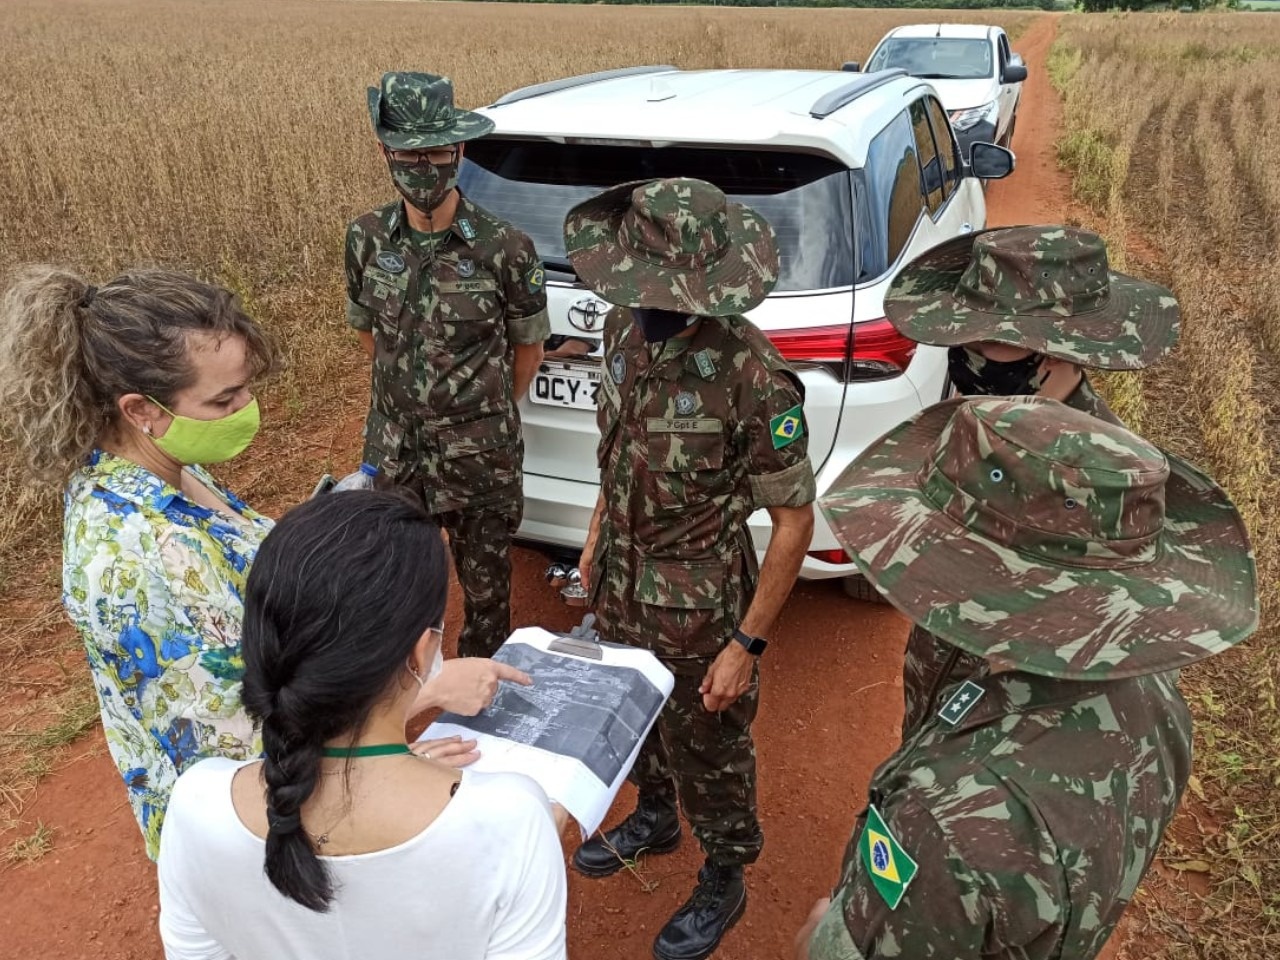 Exército Brasileiro abre inscrições para ingresso no serviço militar em  Mato Grosso :: Notícias de MT